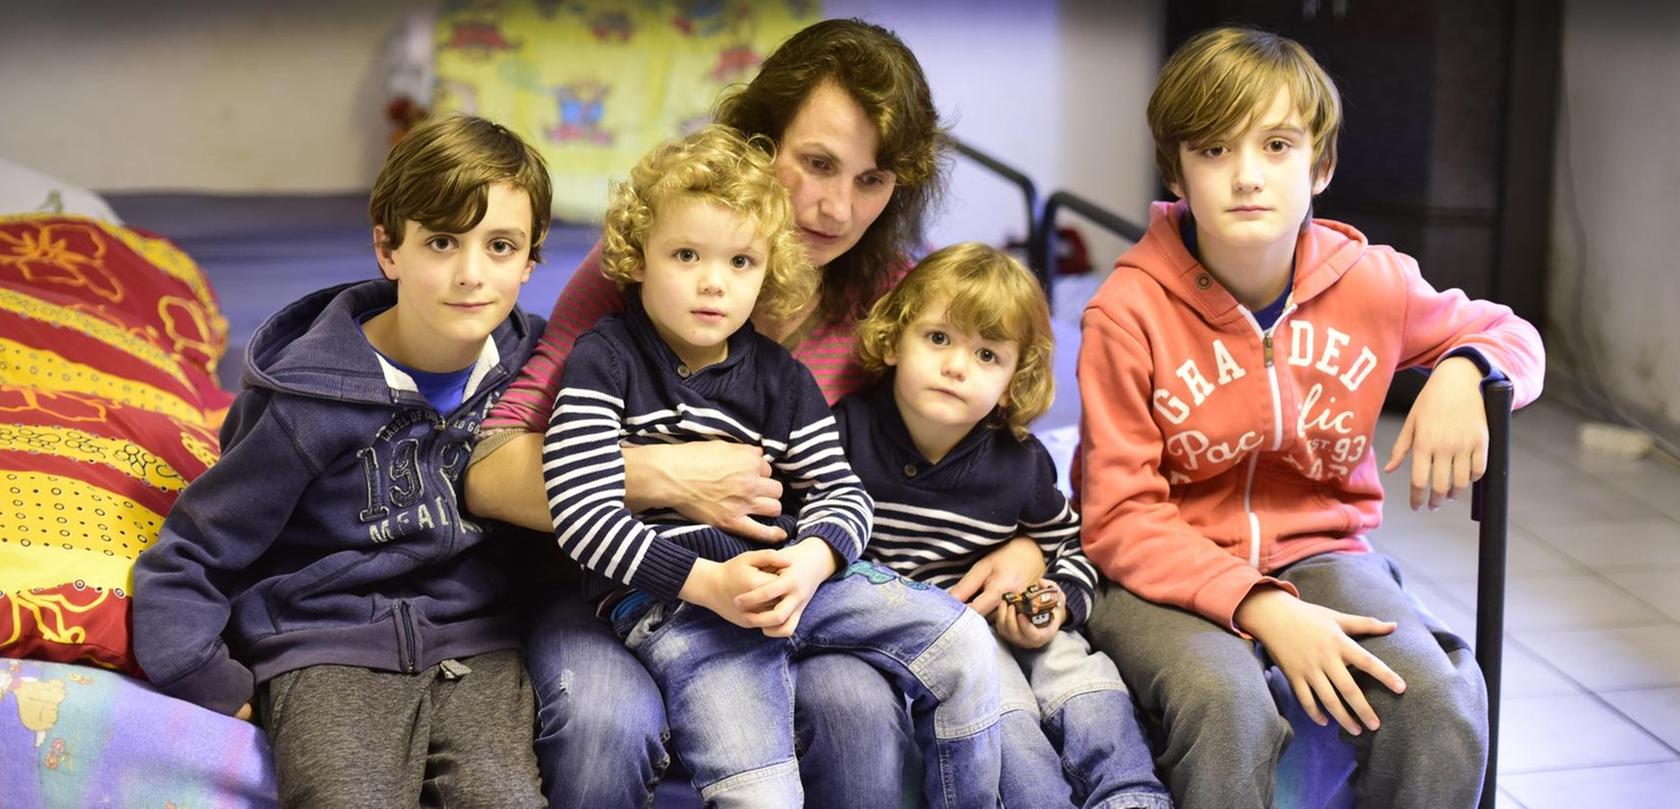 Witwe mit vier Kindern droht Abschiebung in den Kosovo